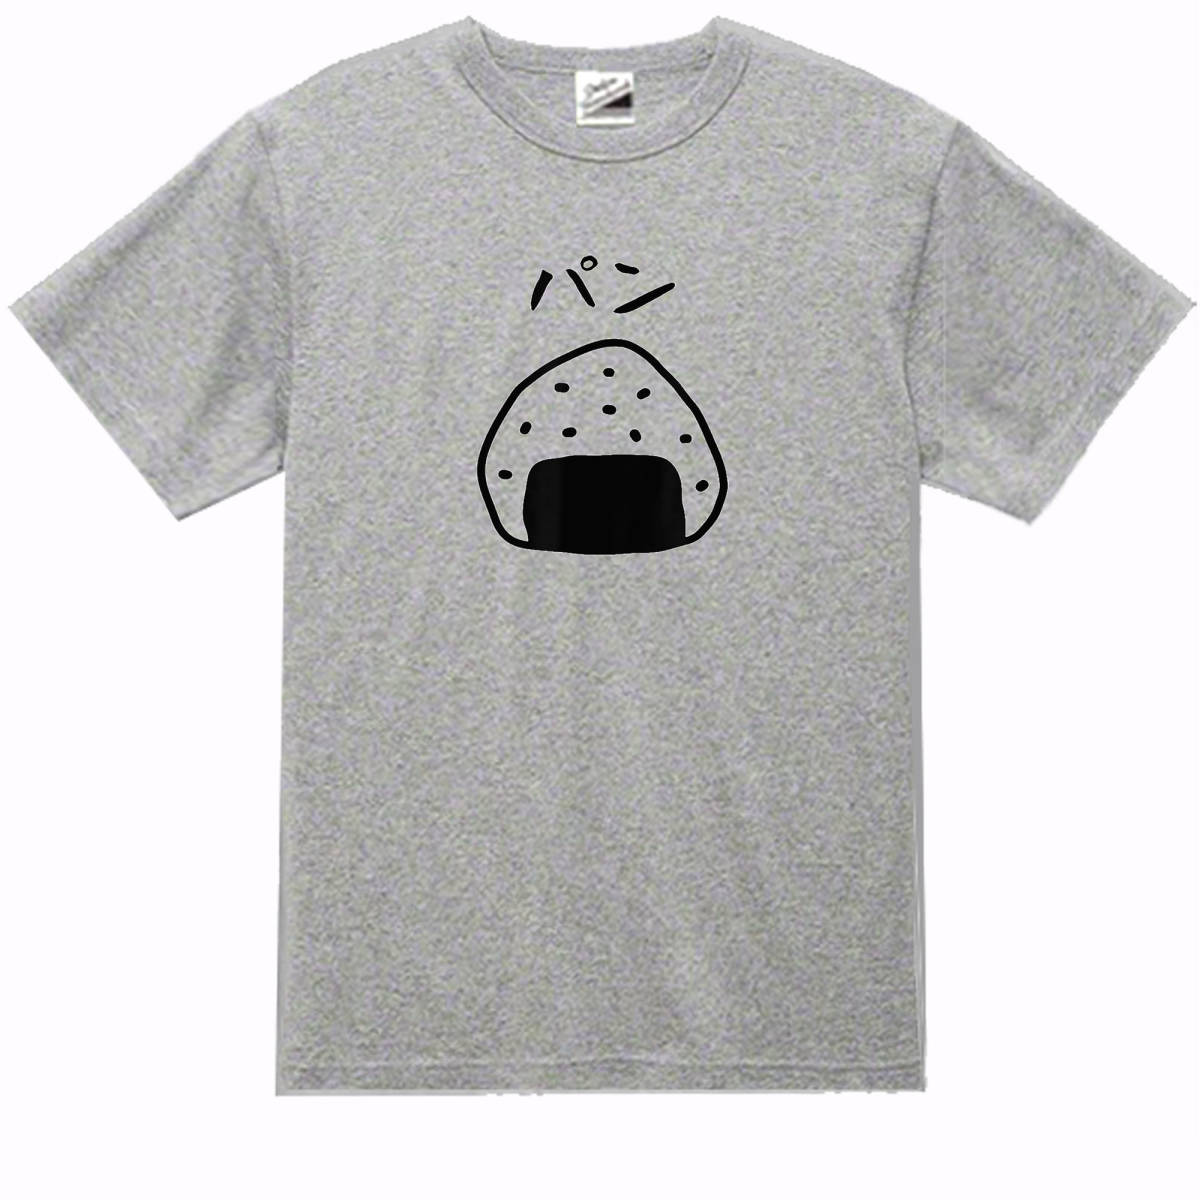 【パロディ灰L】5ozおにぎりパンTシャツJOKE Tシャツ面白いおもしろうけるネタプレゼント送料無料・新品1999円_画像1